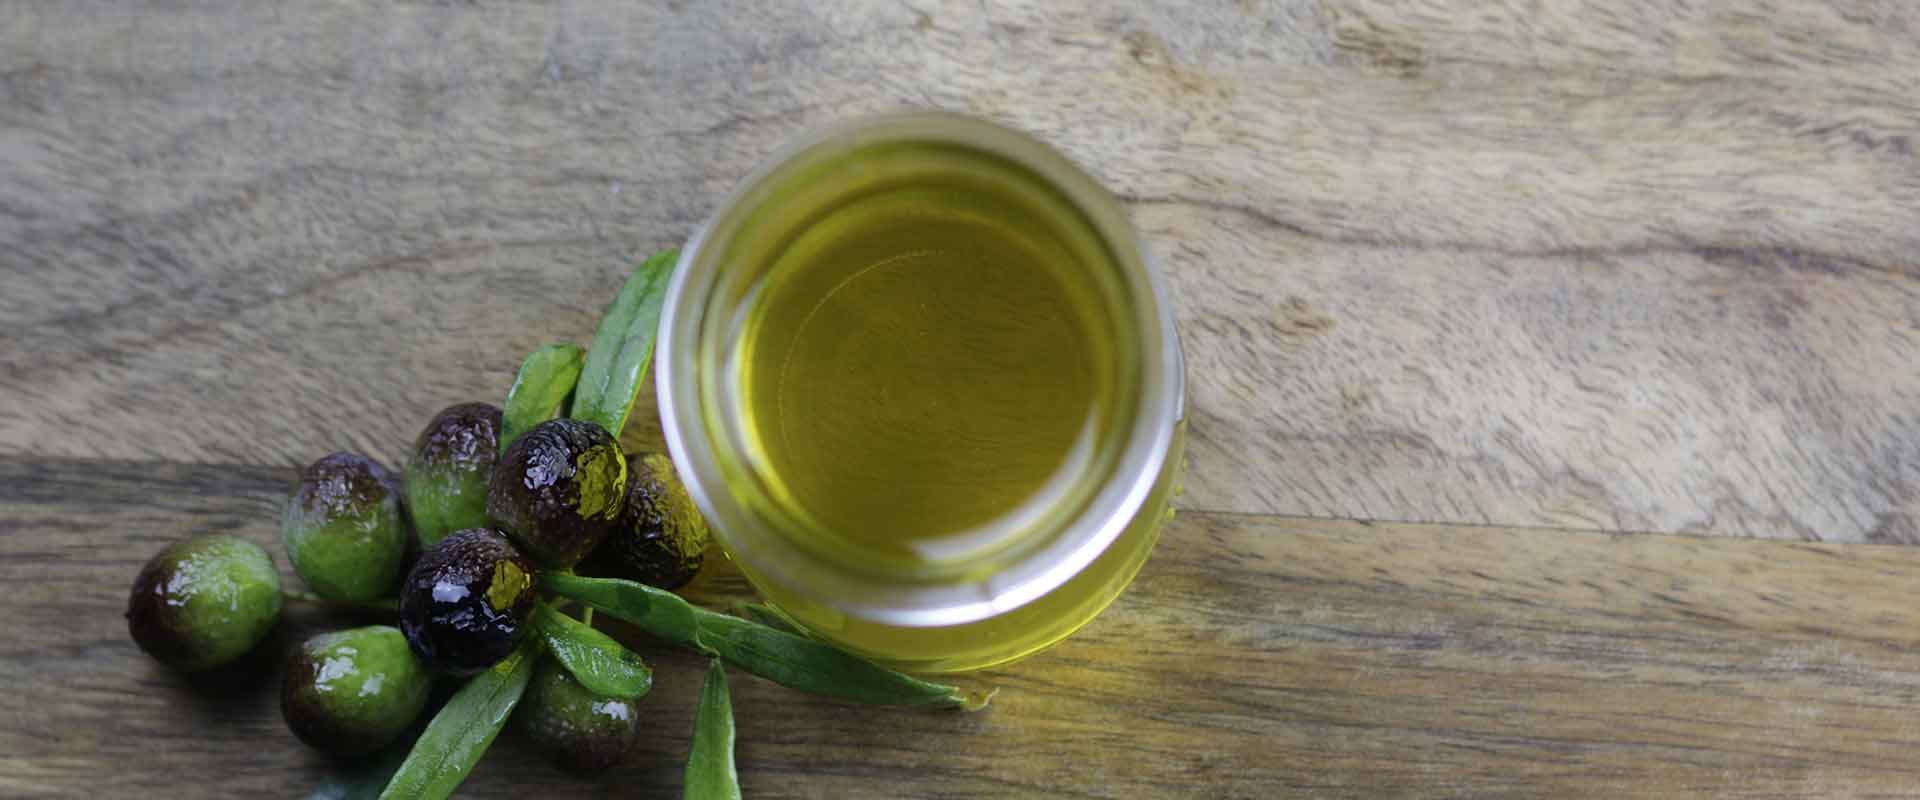 Olio di oliva vergine: definizione e caratteristiche